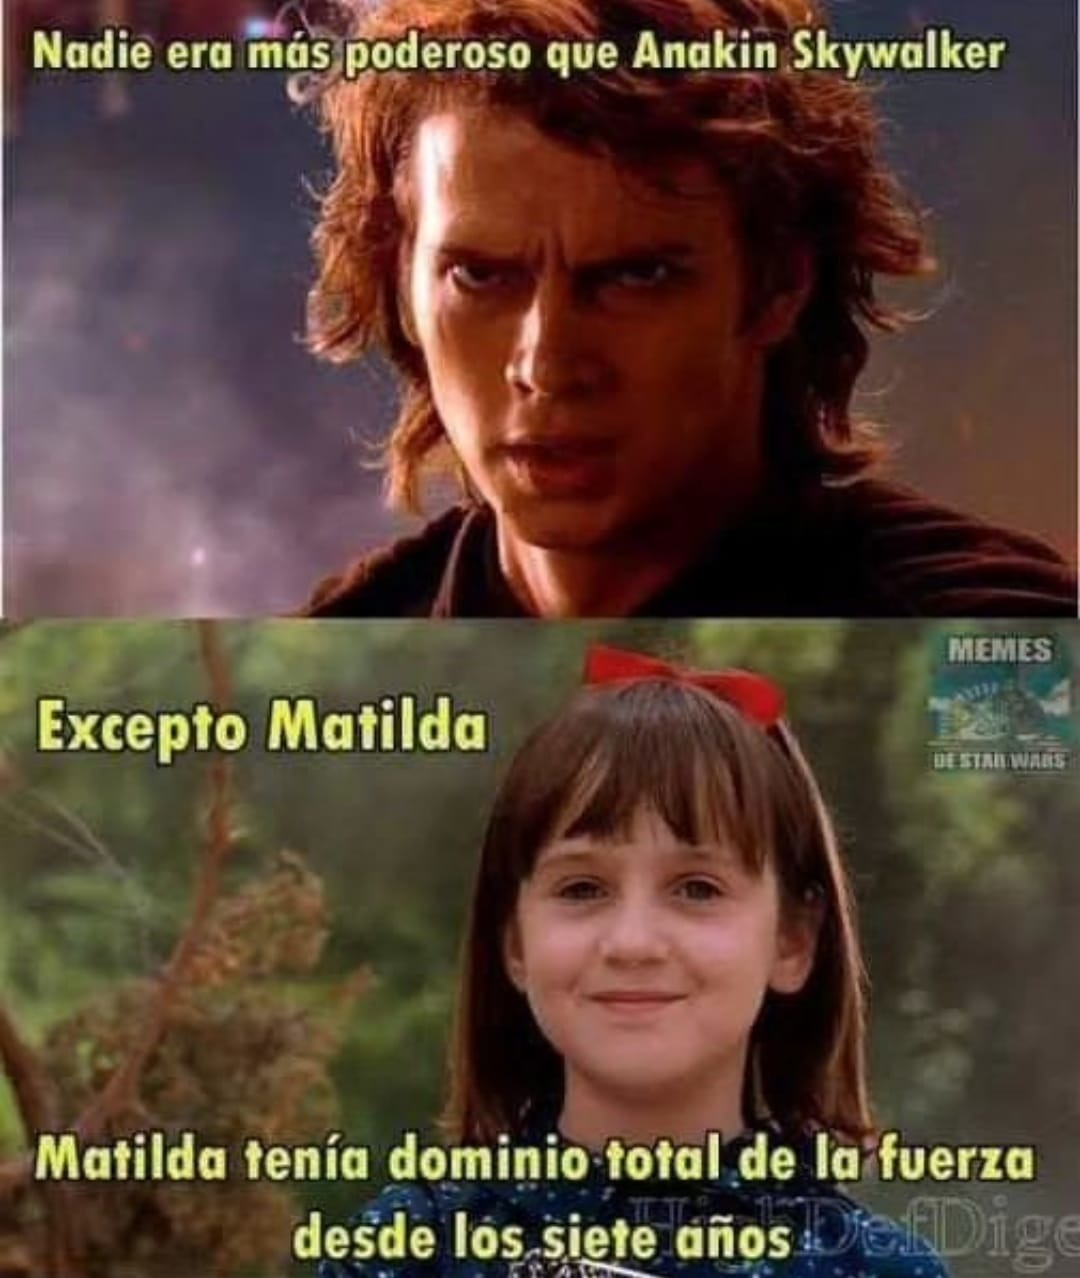 Matilda es muy poderosa en la fuerza - meme